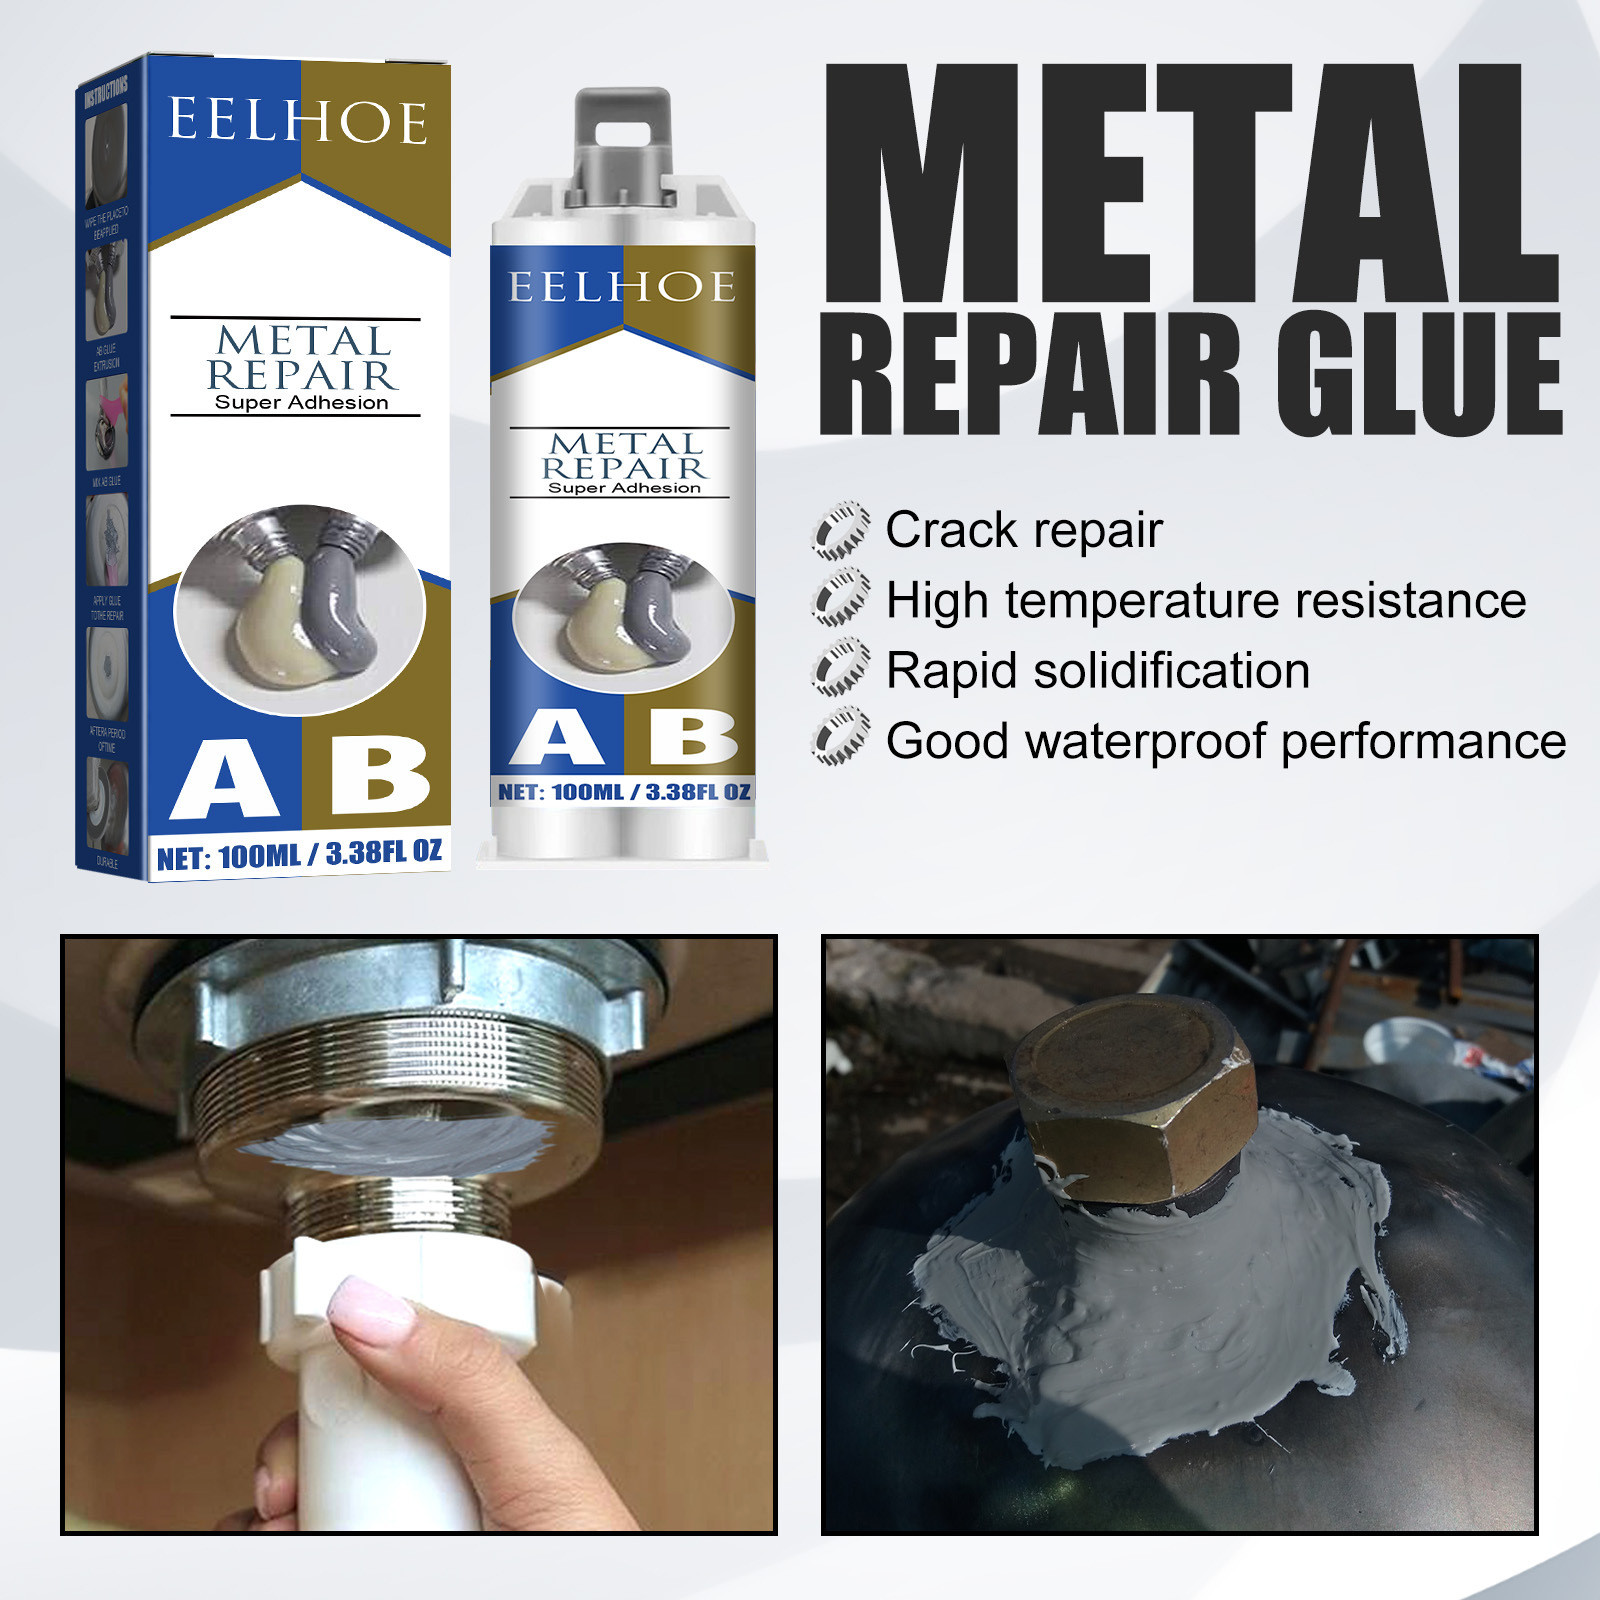 Tiitstoy 50Ml Metal Repair Glue (A&B), Industrial Heat Resistance Cold Weld Metal  Repair Paste Adhesive for Cracks 